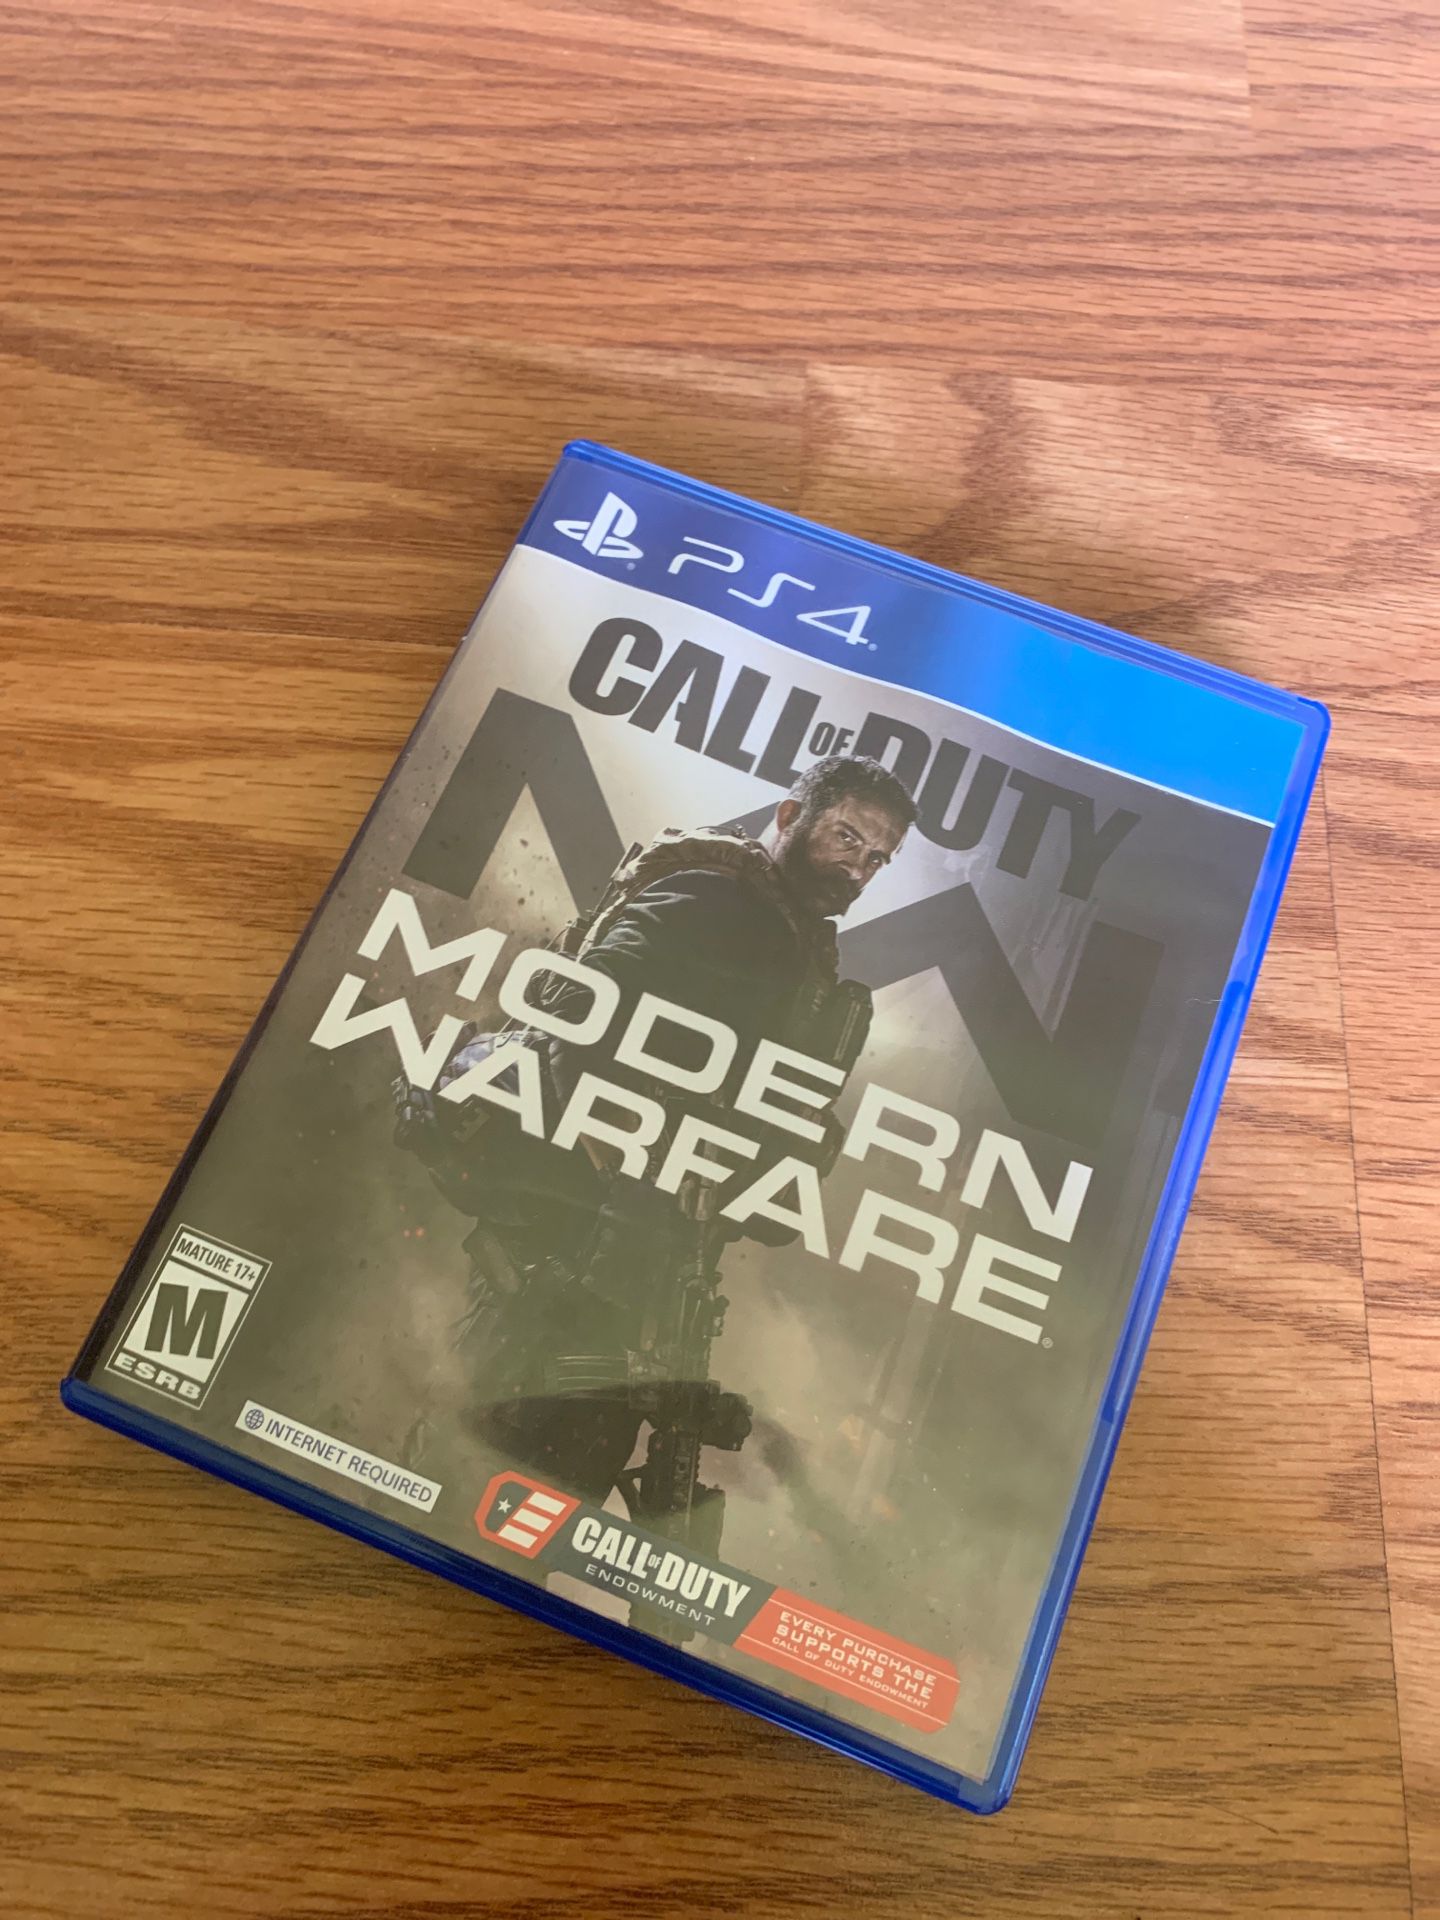 PS4 modern warfare